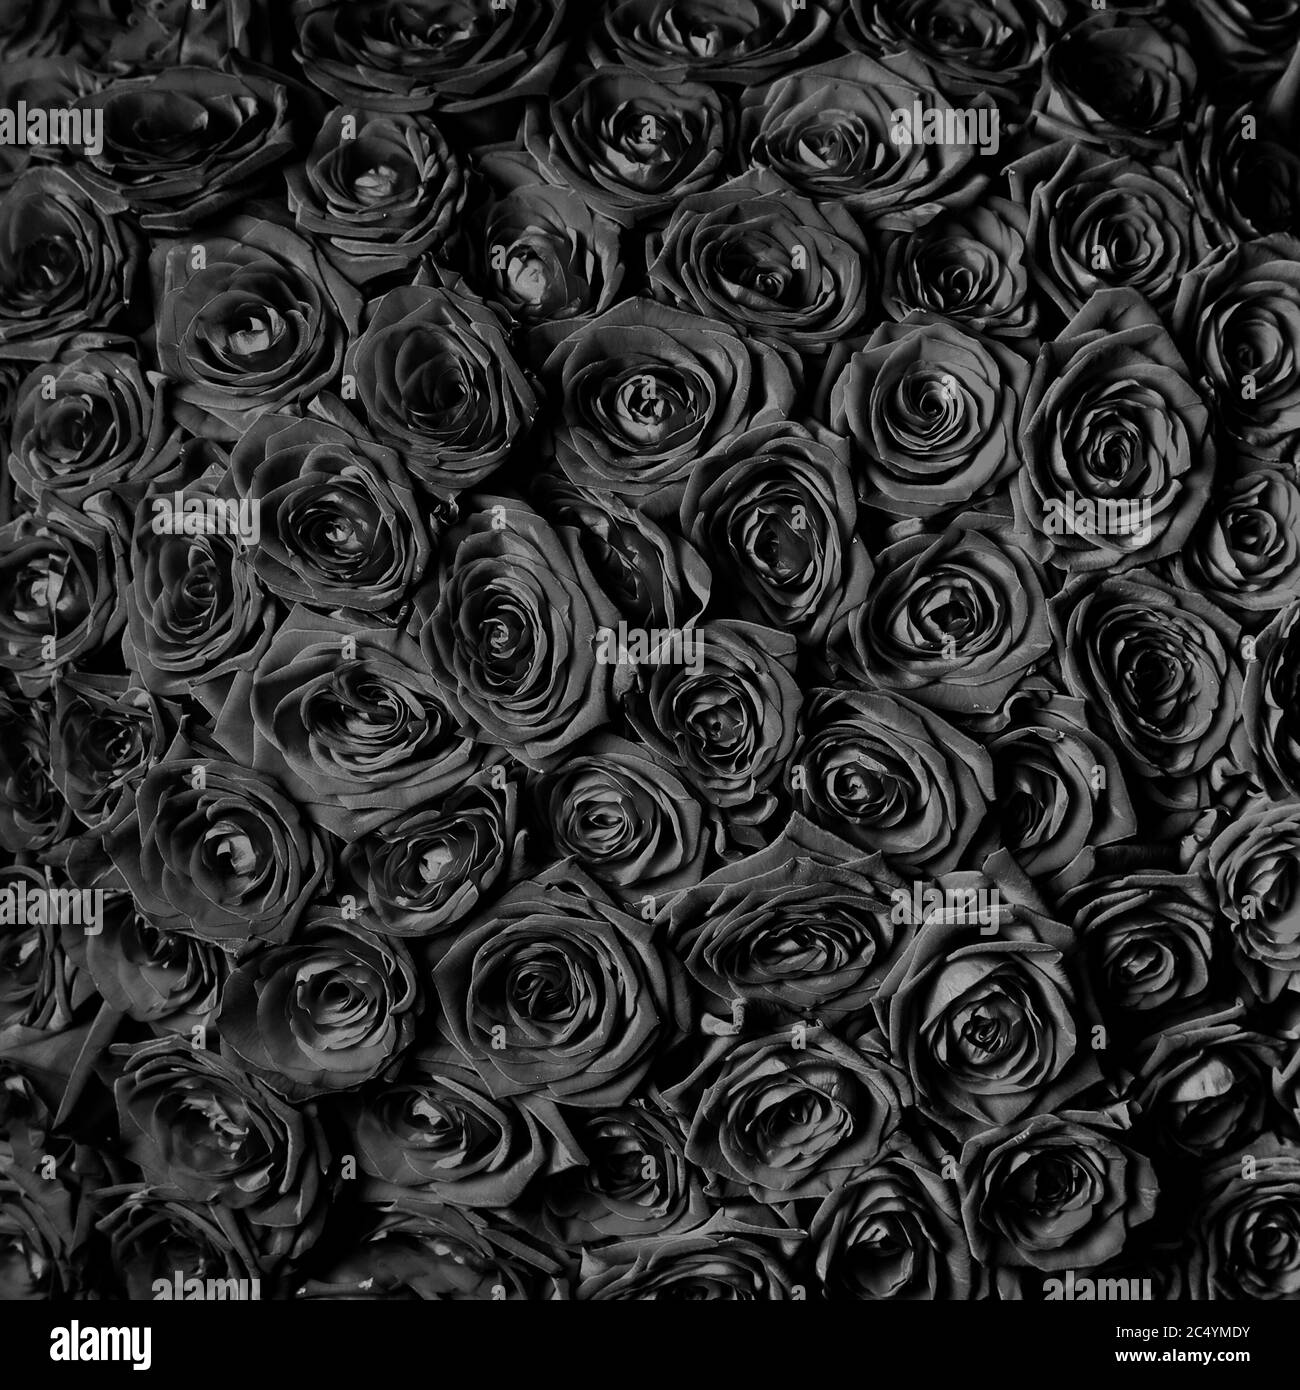 Rosen Hintergrund Schwarzweiß-Stockfotos und -bilder - Alamy